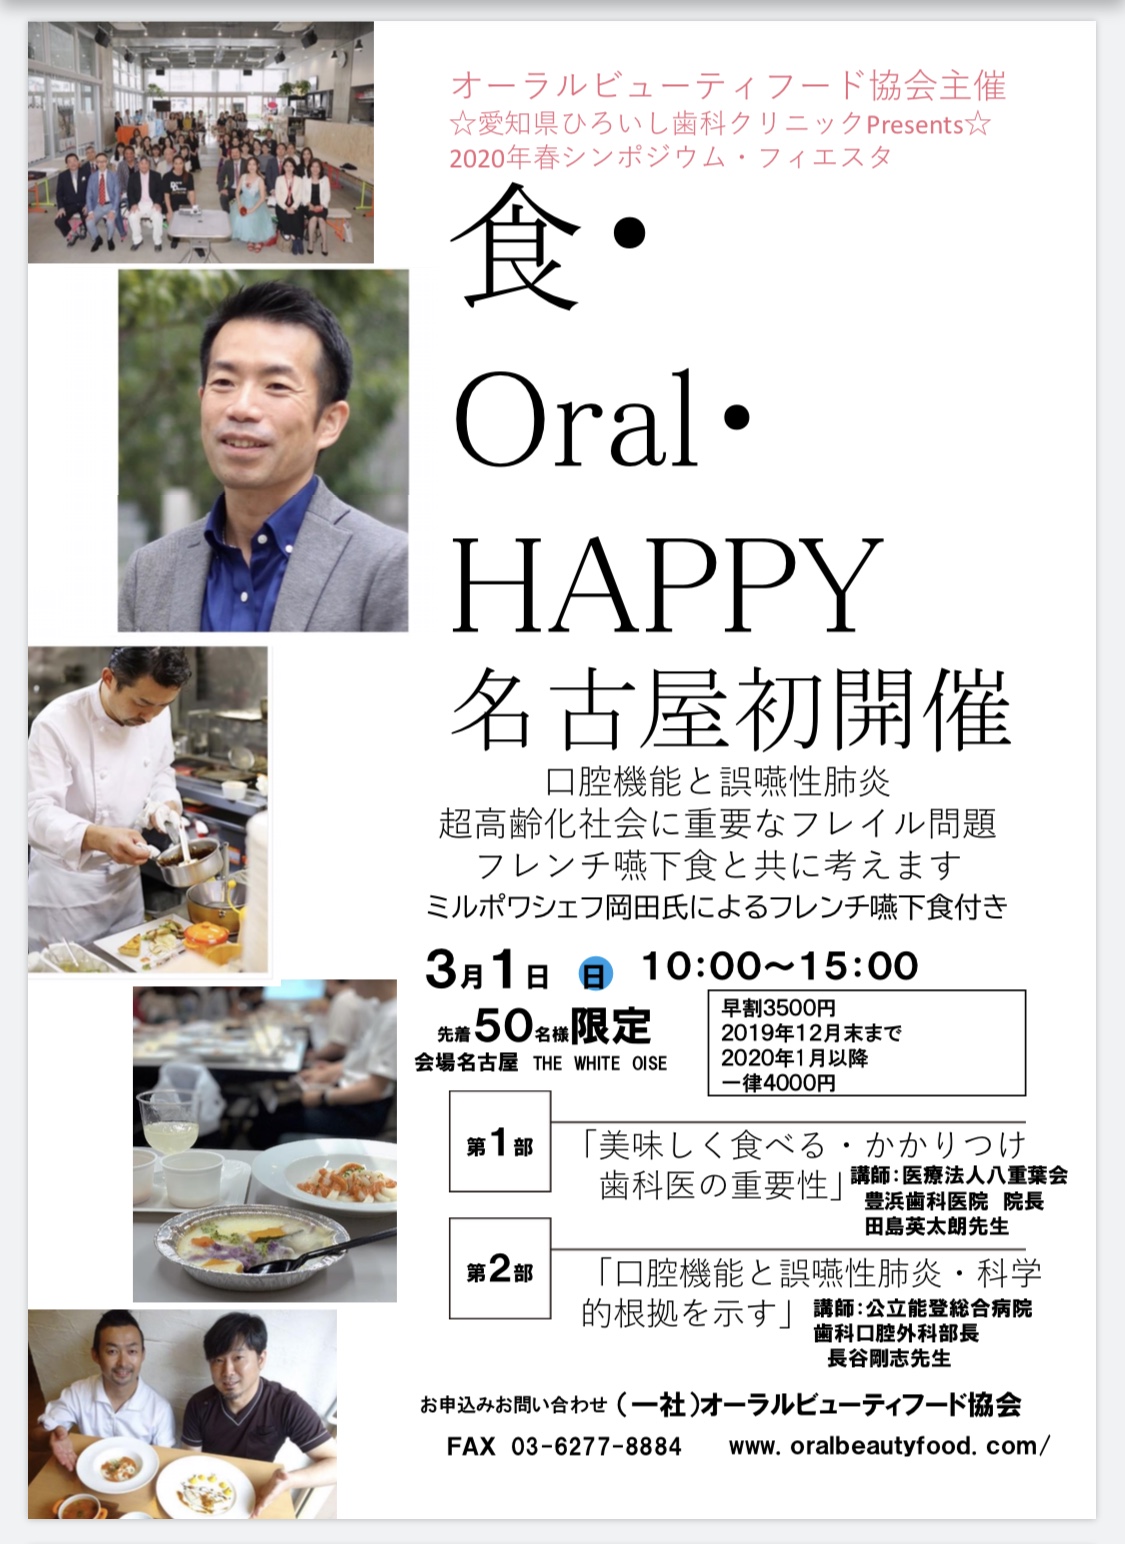 食・Oral・HAPPY名古屋初開催